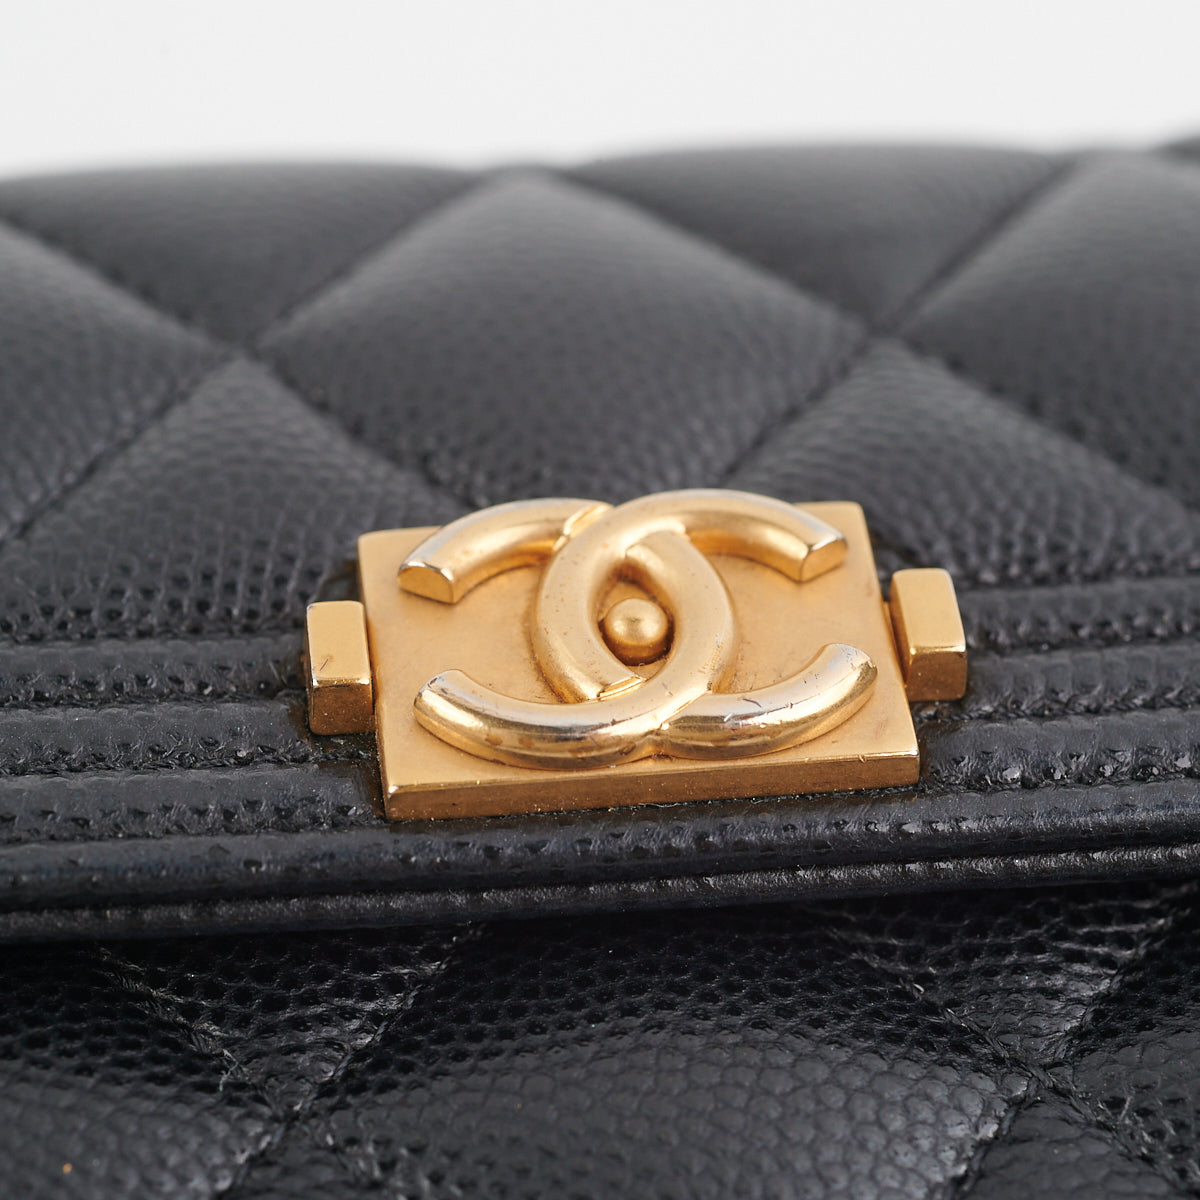 Chanel Boy Flap Long Wallet in Black Caviar AGHW